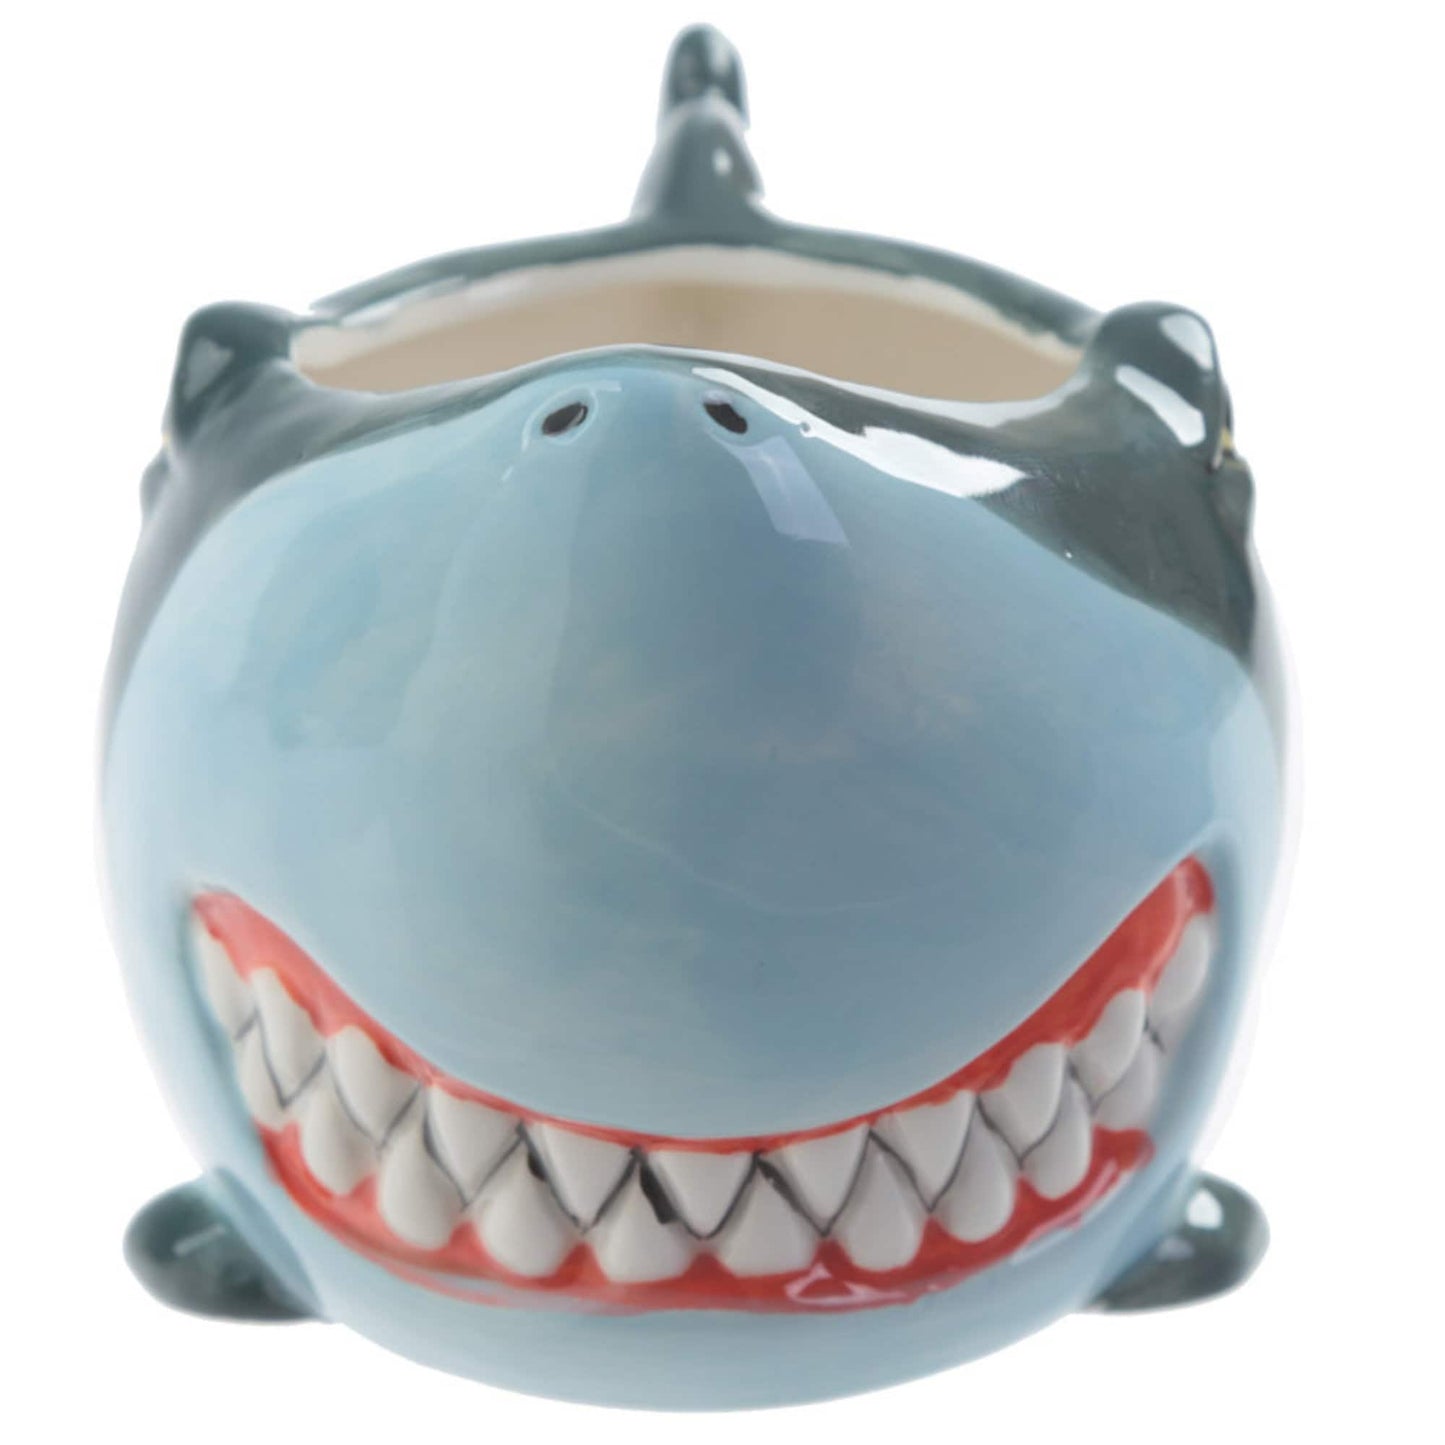 Novelty Shark Shaped Ceramic Mug